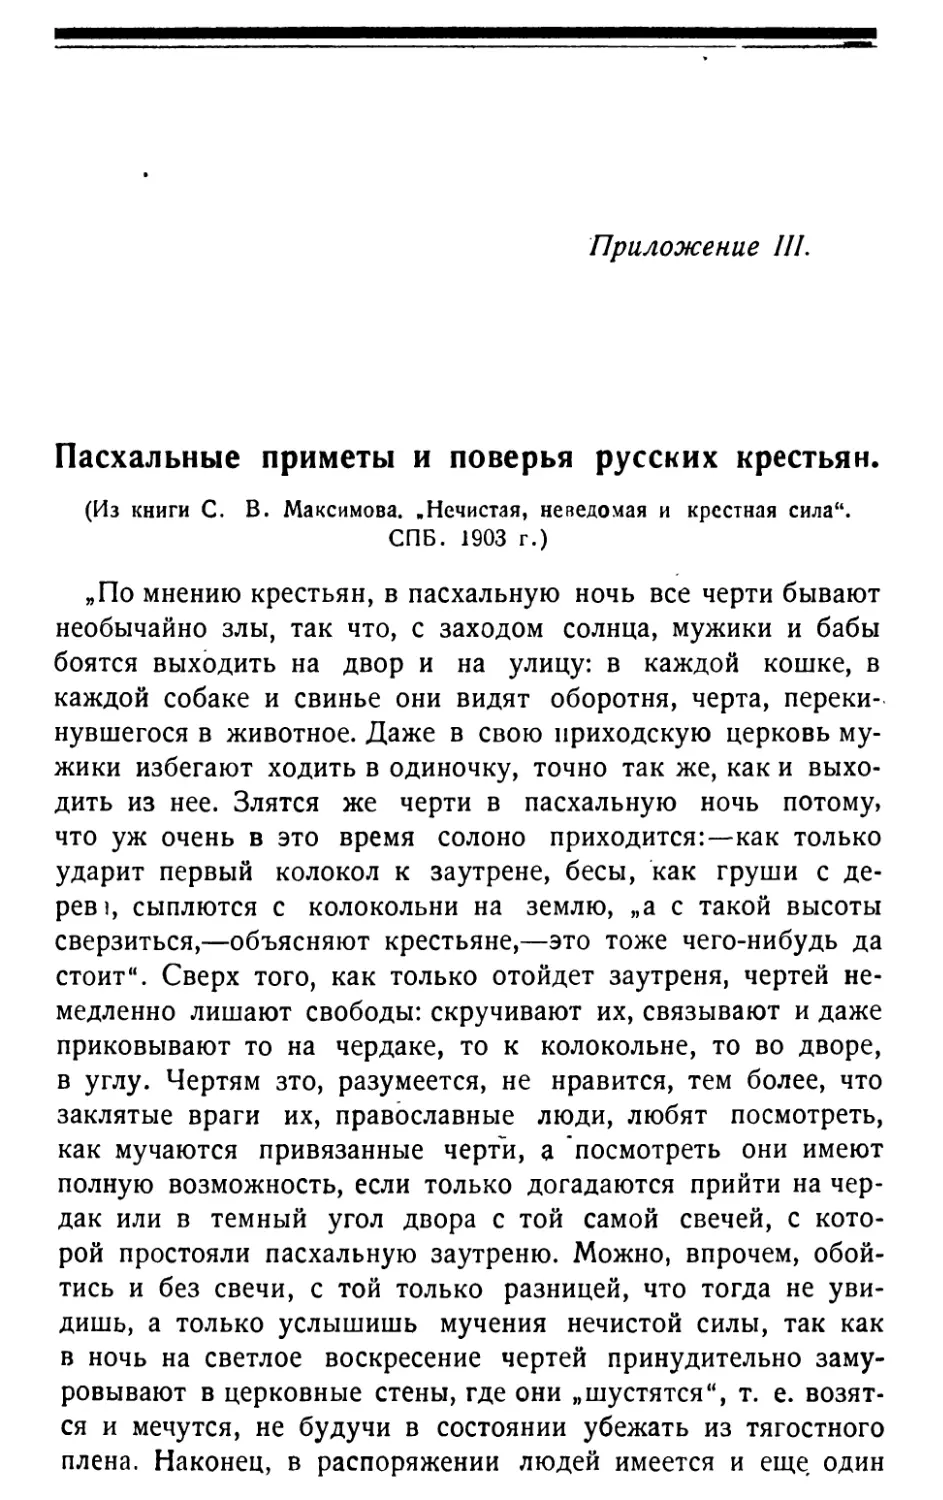 Приложение III. Пасхальные приметы и поверья русских крестьян